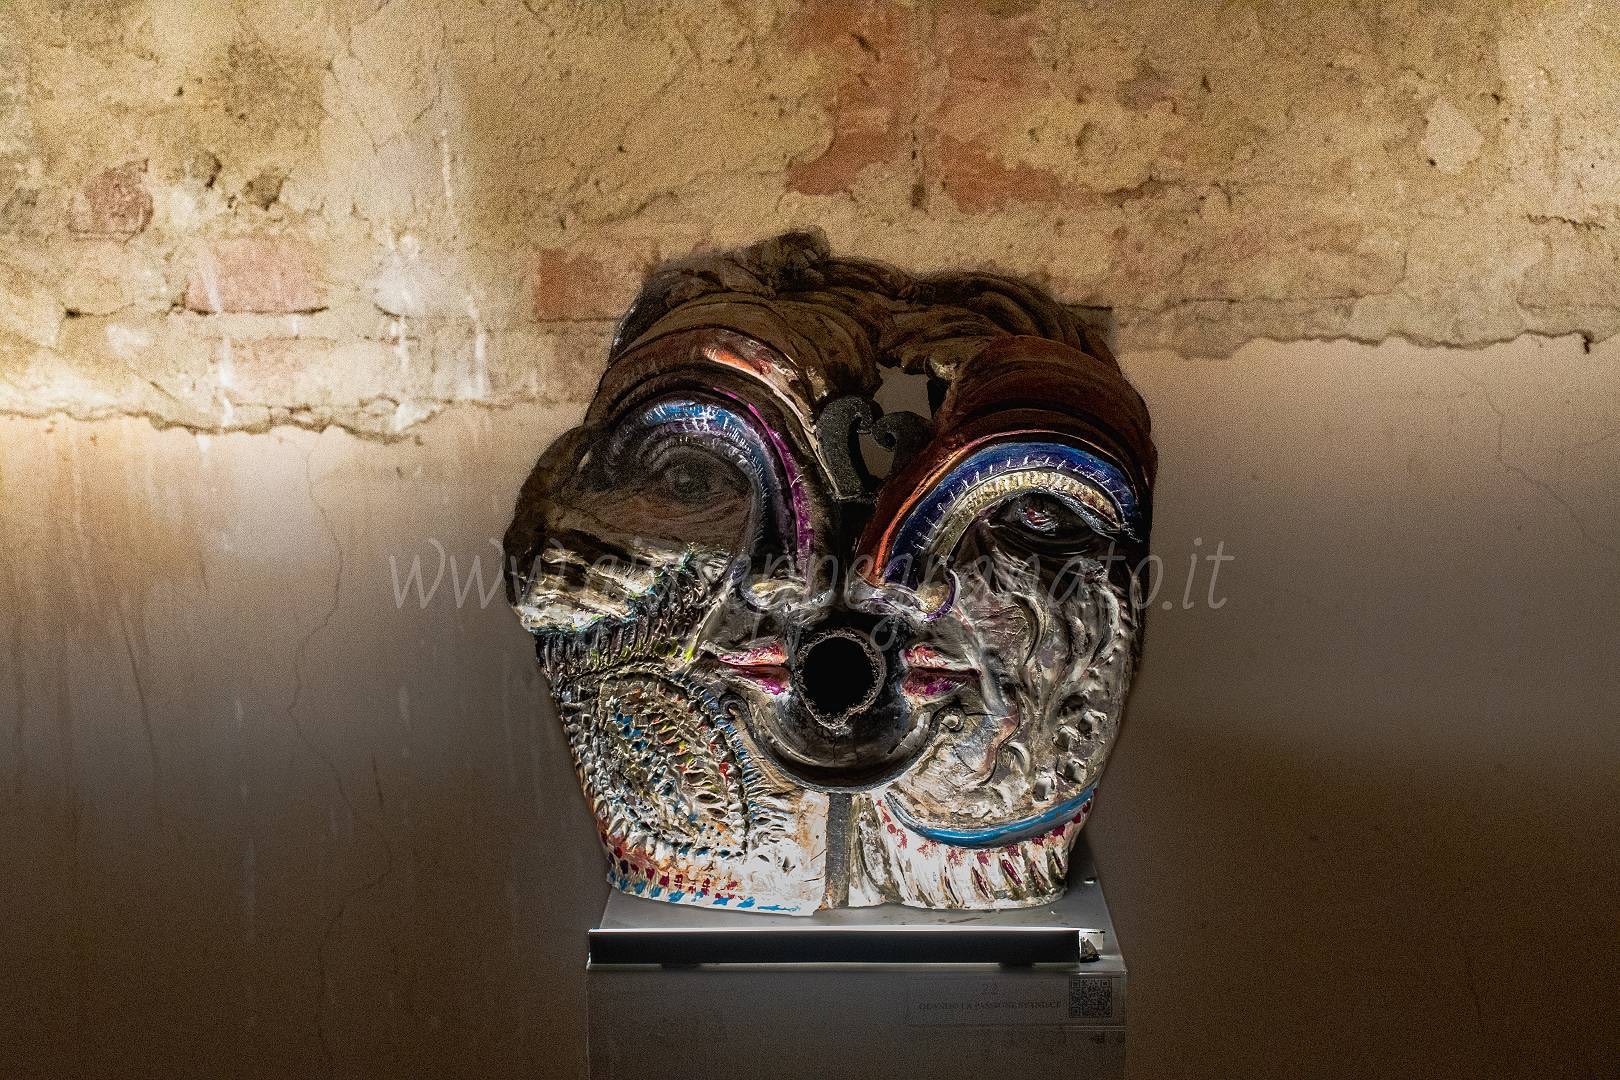 Letizia Cucciarelli, "Quando la passione finisce", scultura in pietra con inserti in metallo antico, 2020